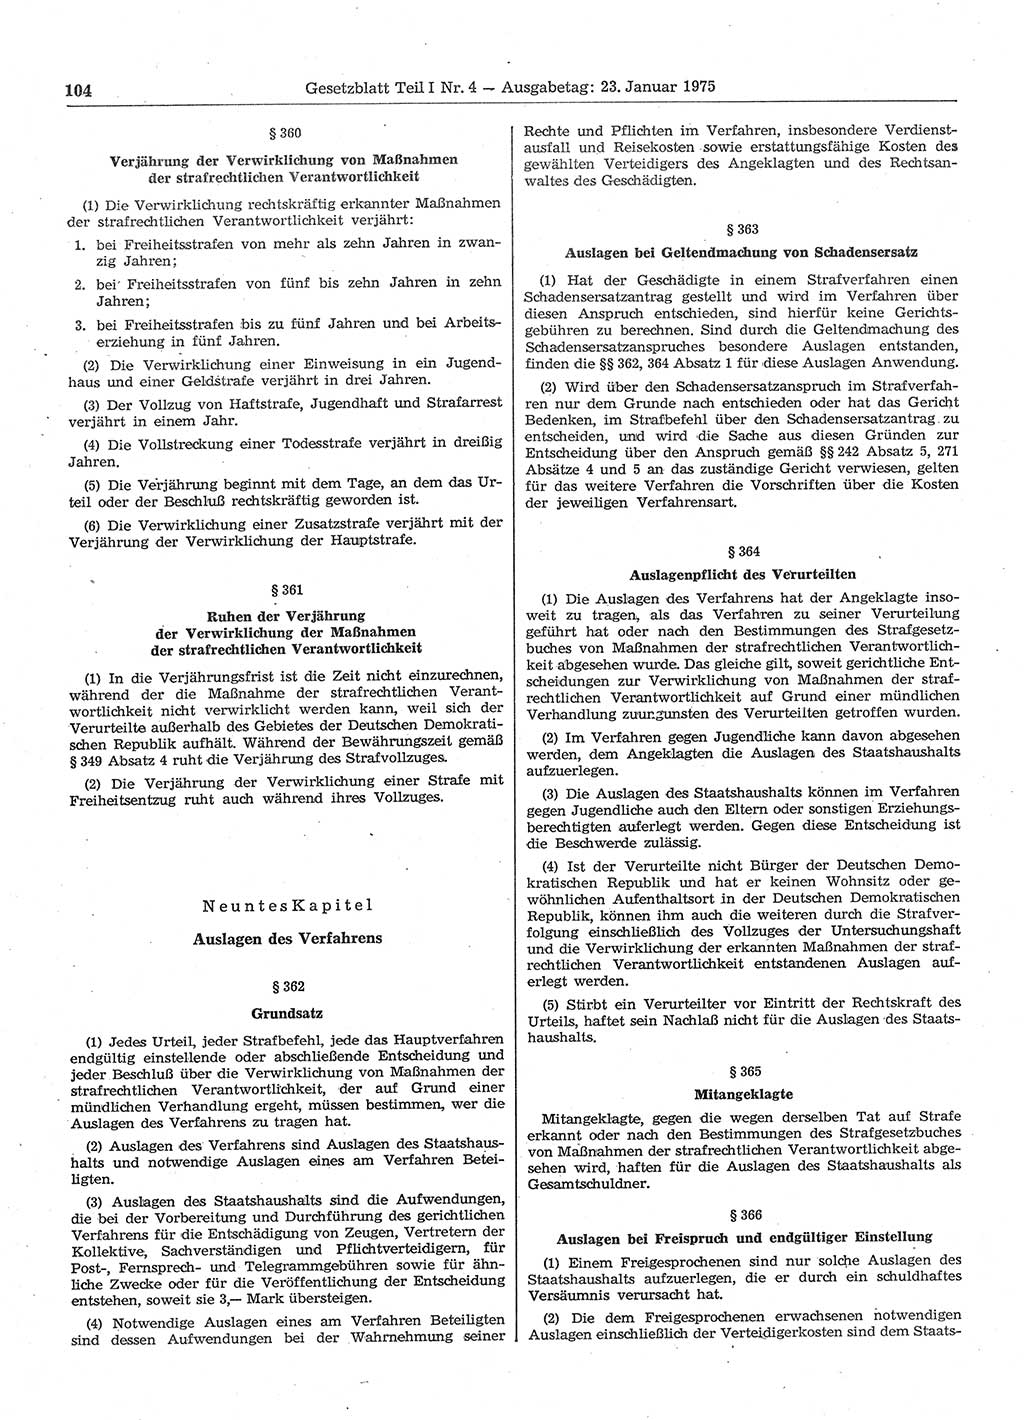 Gesetzblatt (GBl.) der Deutschen Demokratischen Republik (DDR) Teil Ⅰ 1975, Seite 104 (GBl. DDR Ⅰ 1975, S. 104)